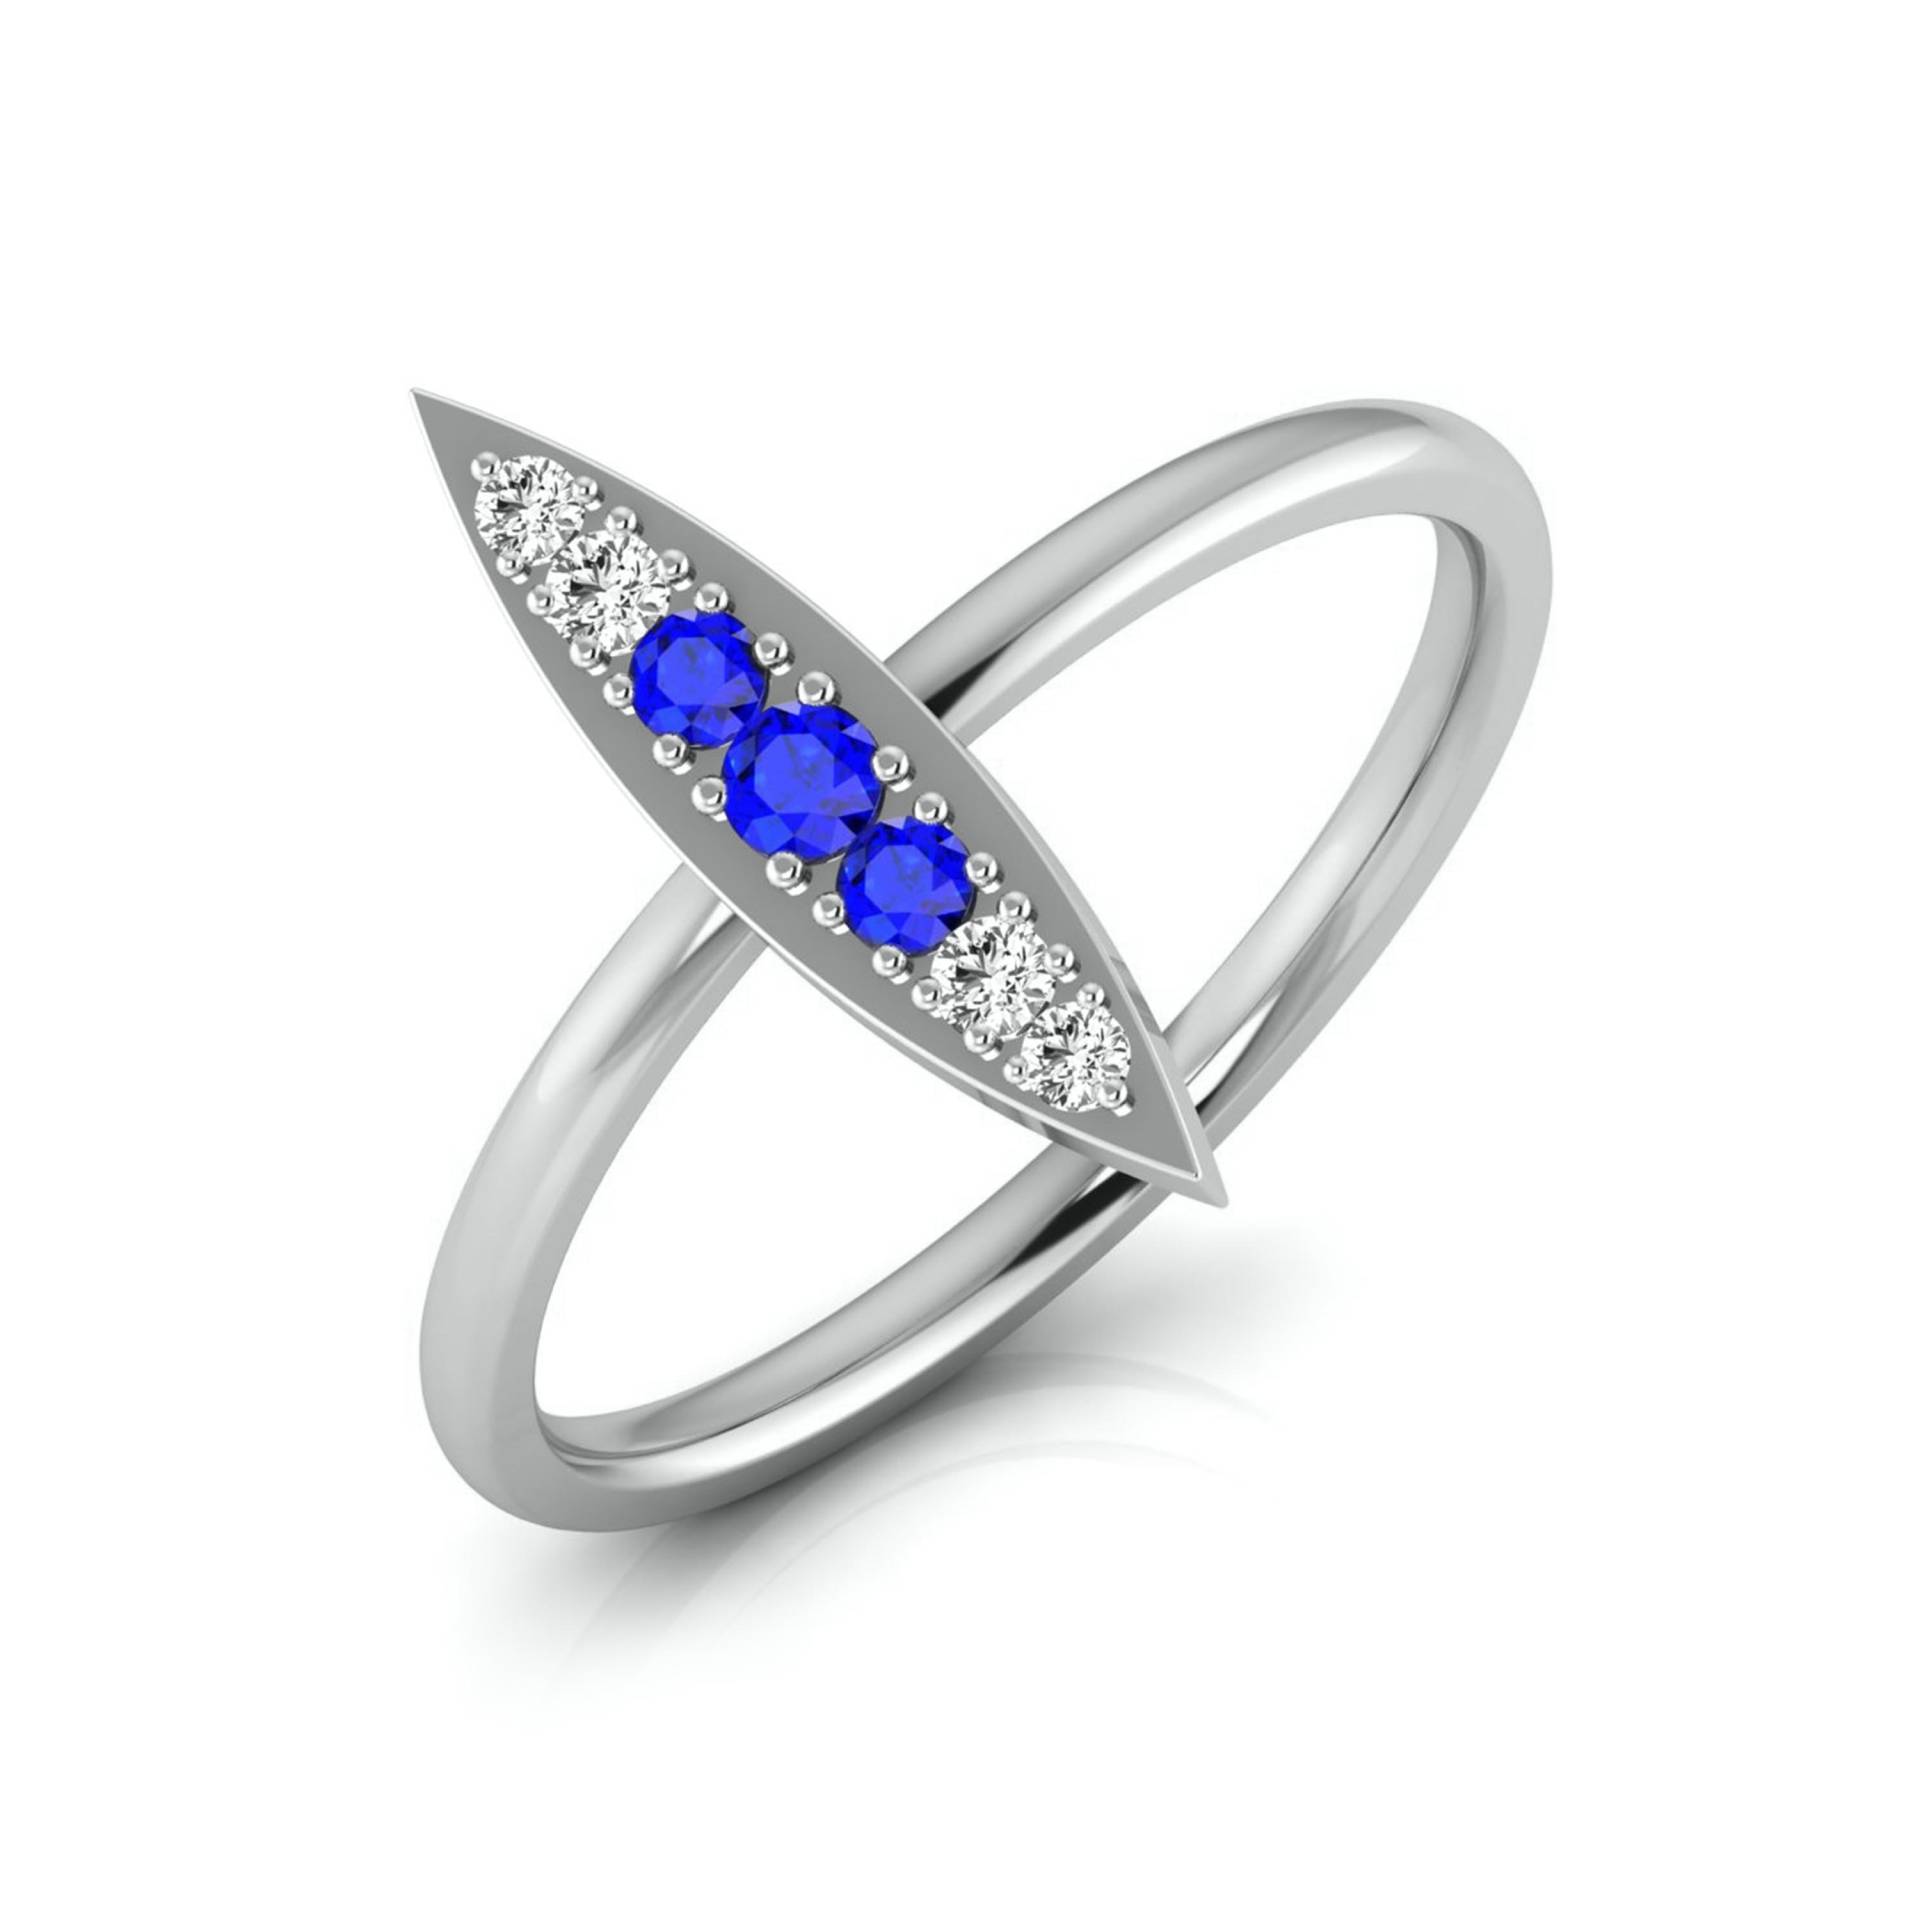 Blauer Saphir Platin Diamant Verlobungsring Jl Pt Lr 7026 von Jewelove